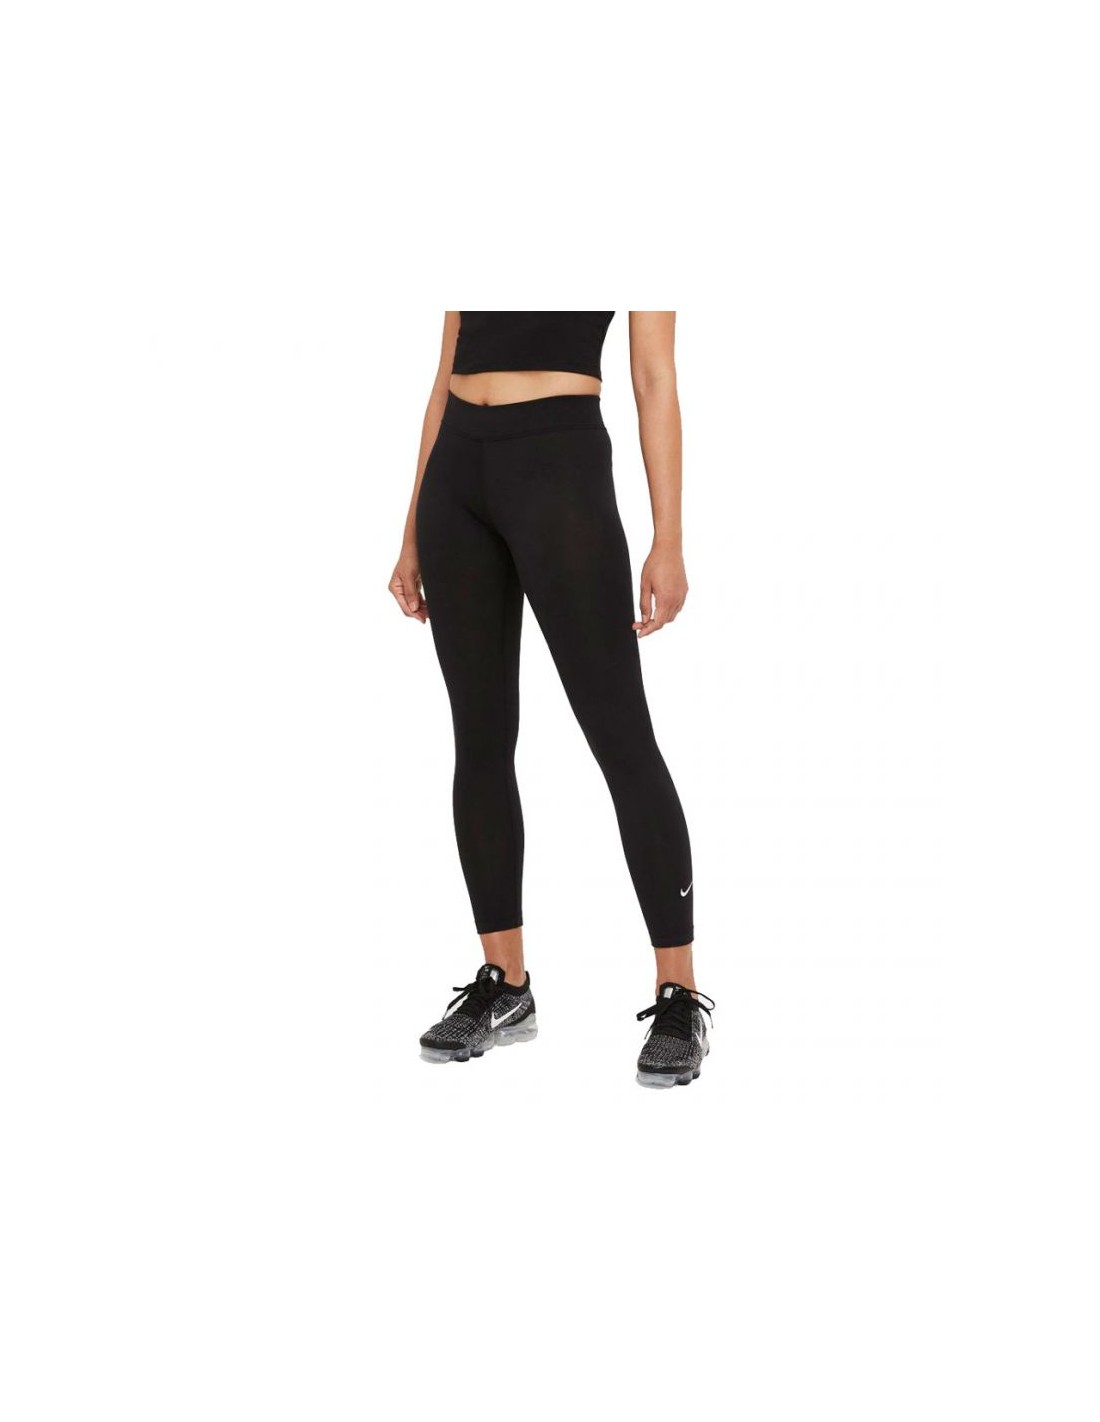 Nike CZ8532010 Women's Leggings Black : : Fashion